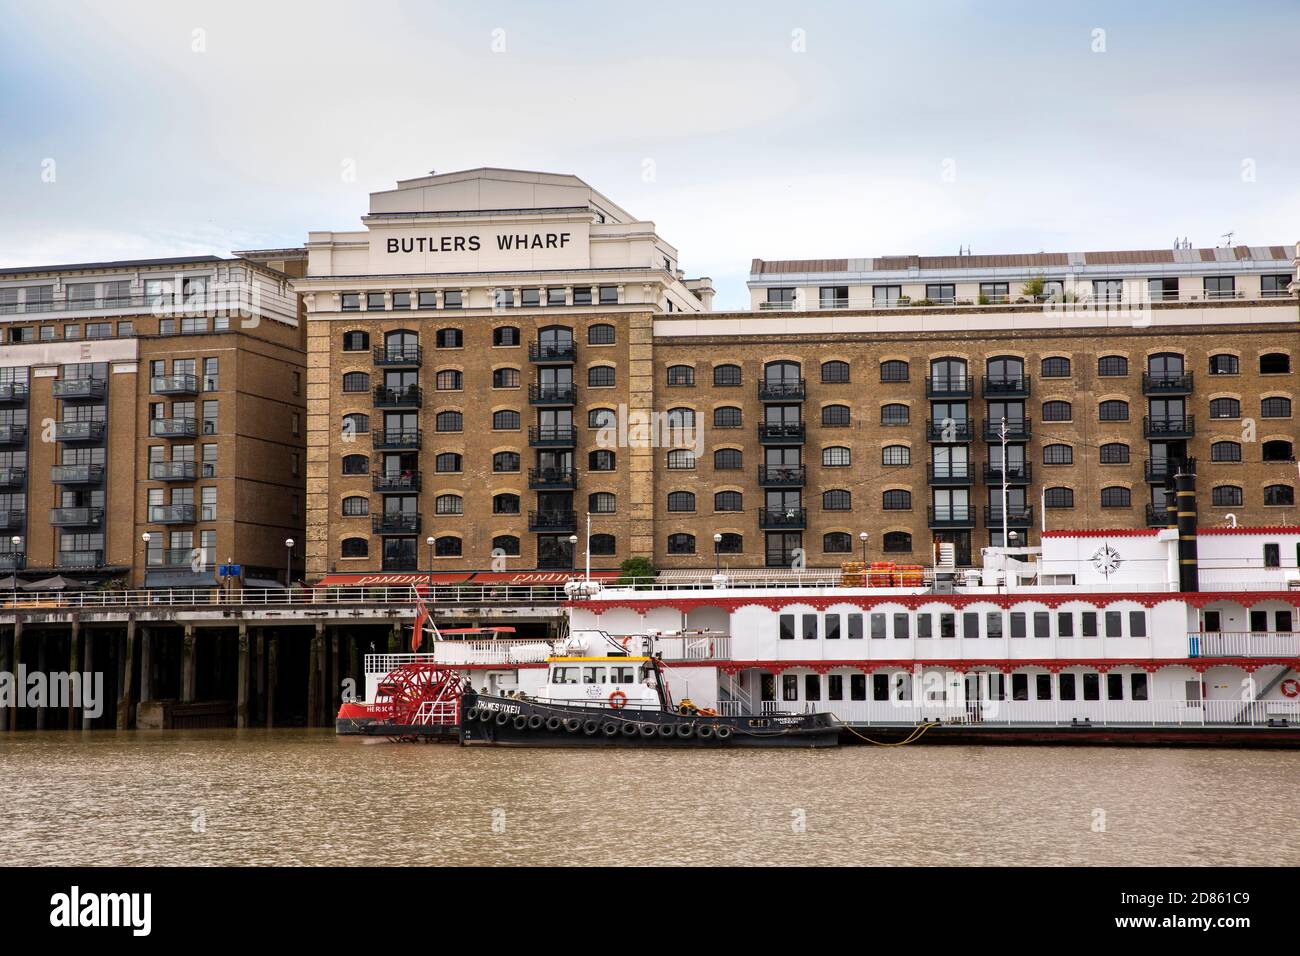 Royaume-Uni, Londres, l'entrepôt de Butlers Wharf au bord de la rivière Thames a été converti en hébergement haut de gamme Banque D'Images